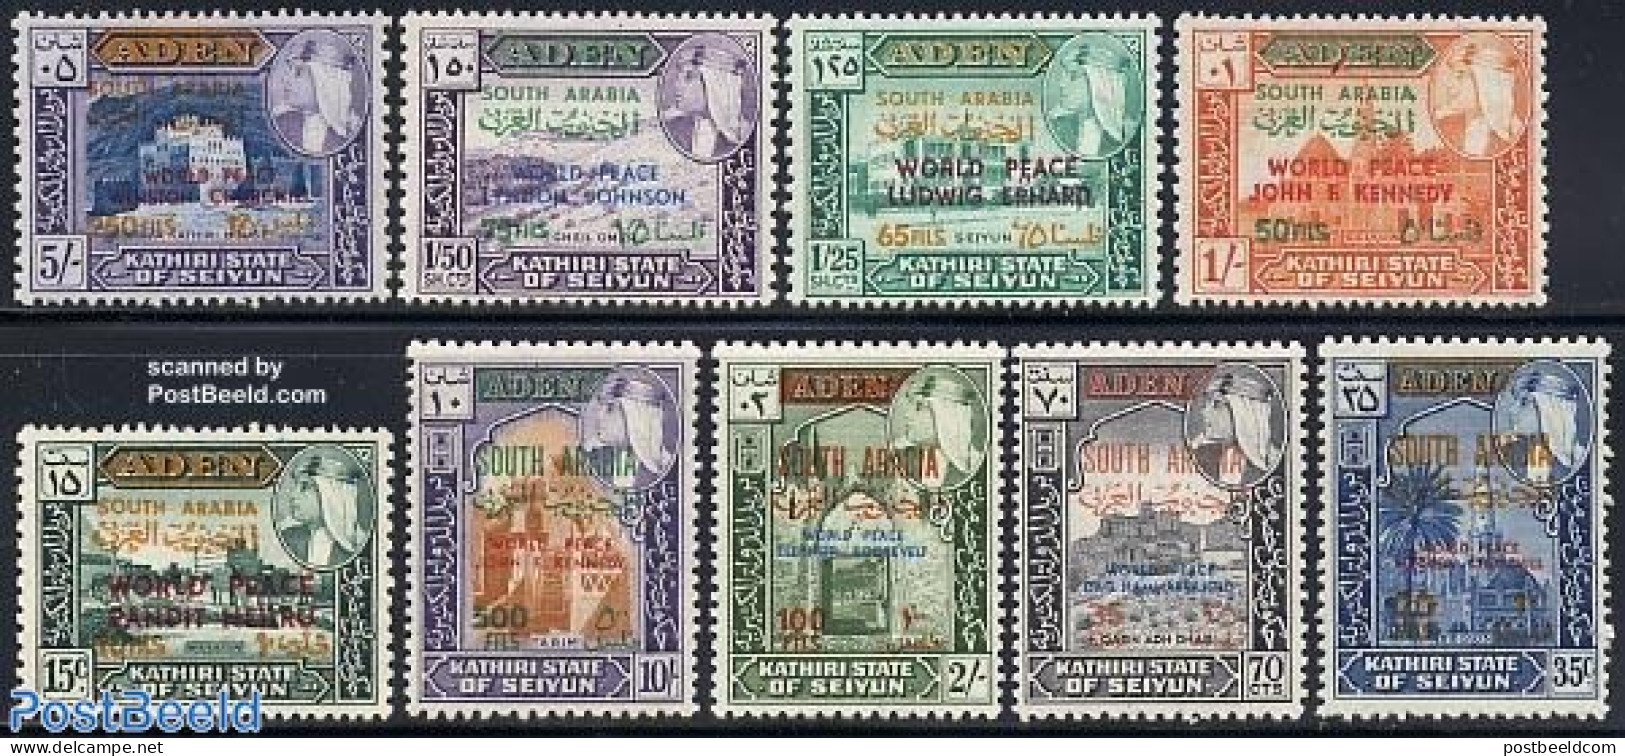 Aden 1967 Seiyun, World Peace Overprints 9v, Mint NH, Art - Castles & Fortifications - Castillos